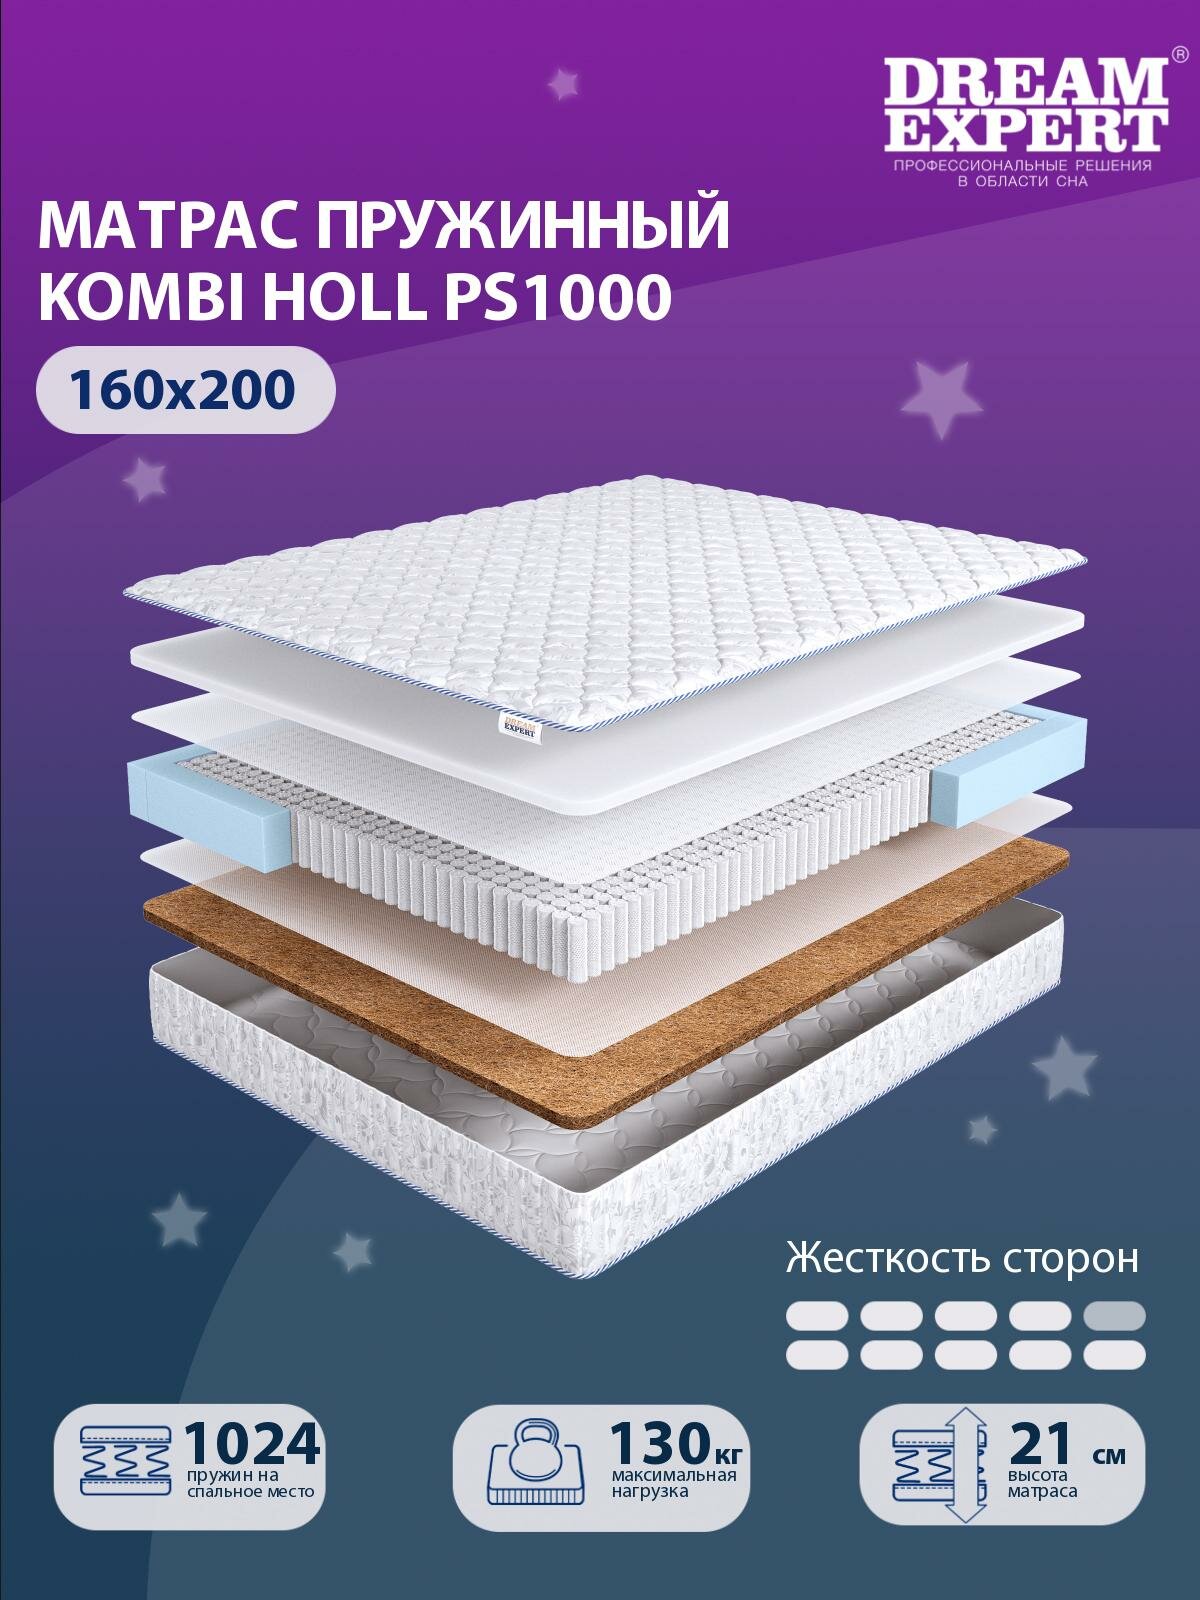 Матрас DreamExpert Kombi Holl PS1000 жесткость высокая и выше средней, двуспальный, независимый пружинный блок, на кровать 160x200